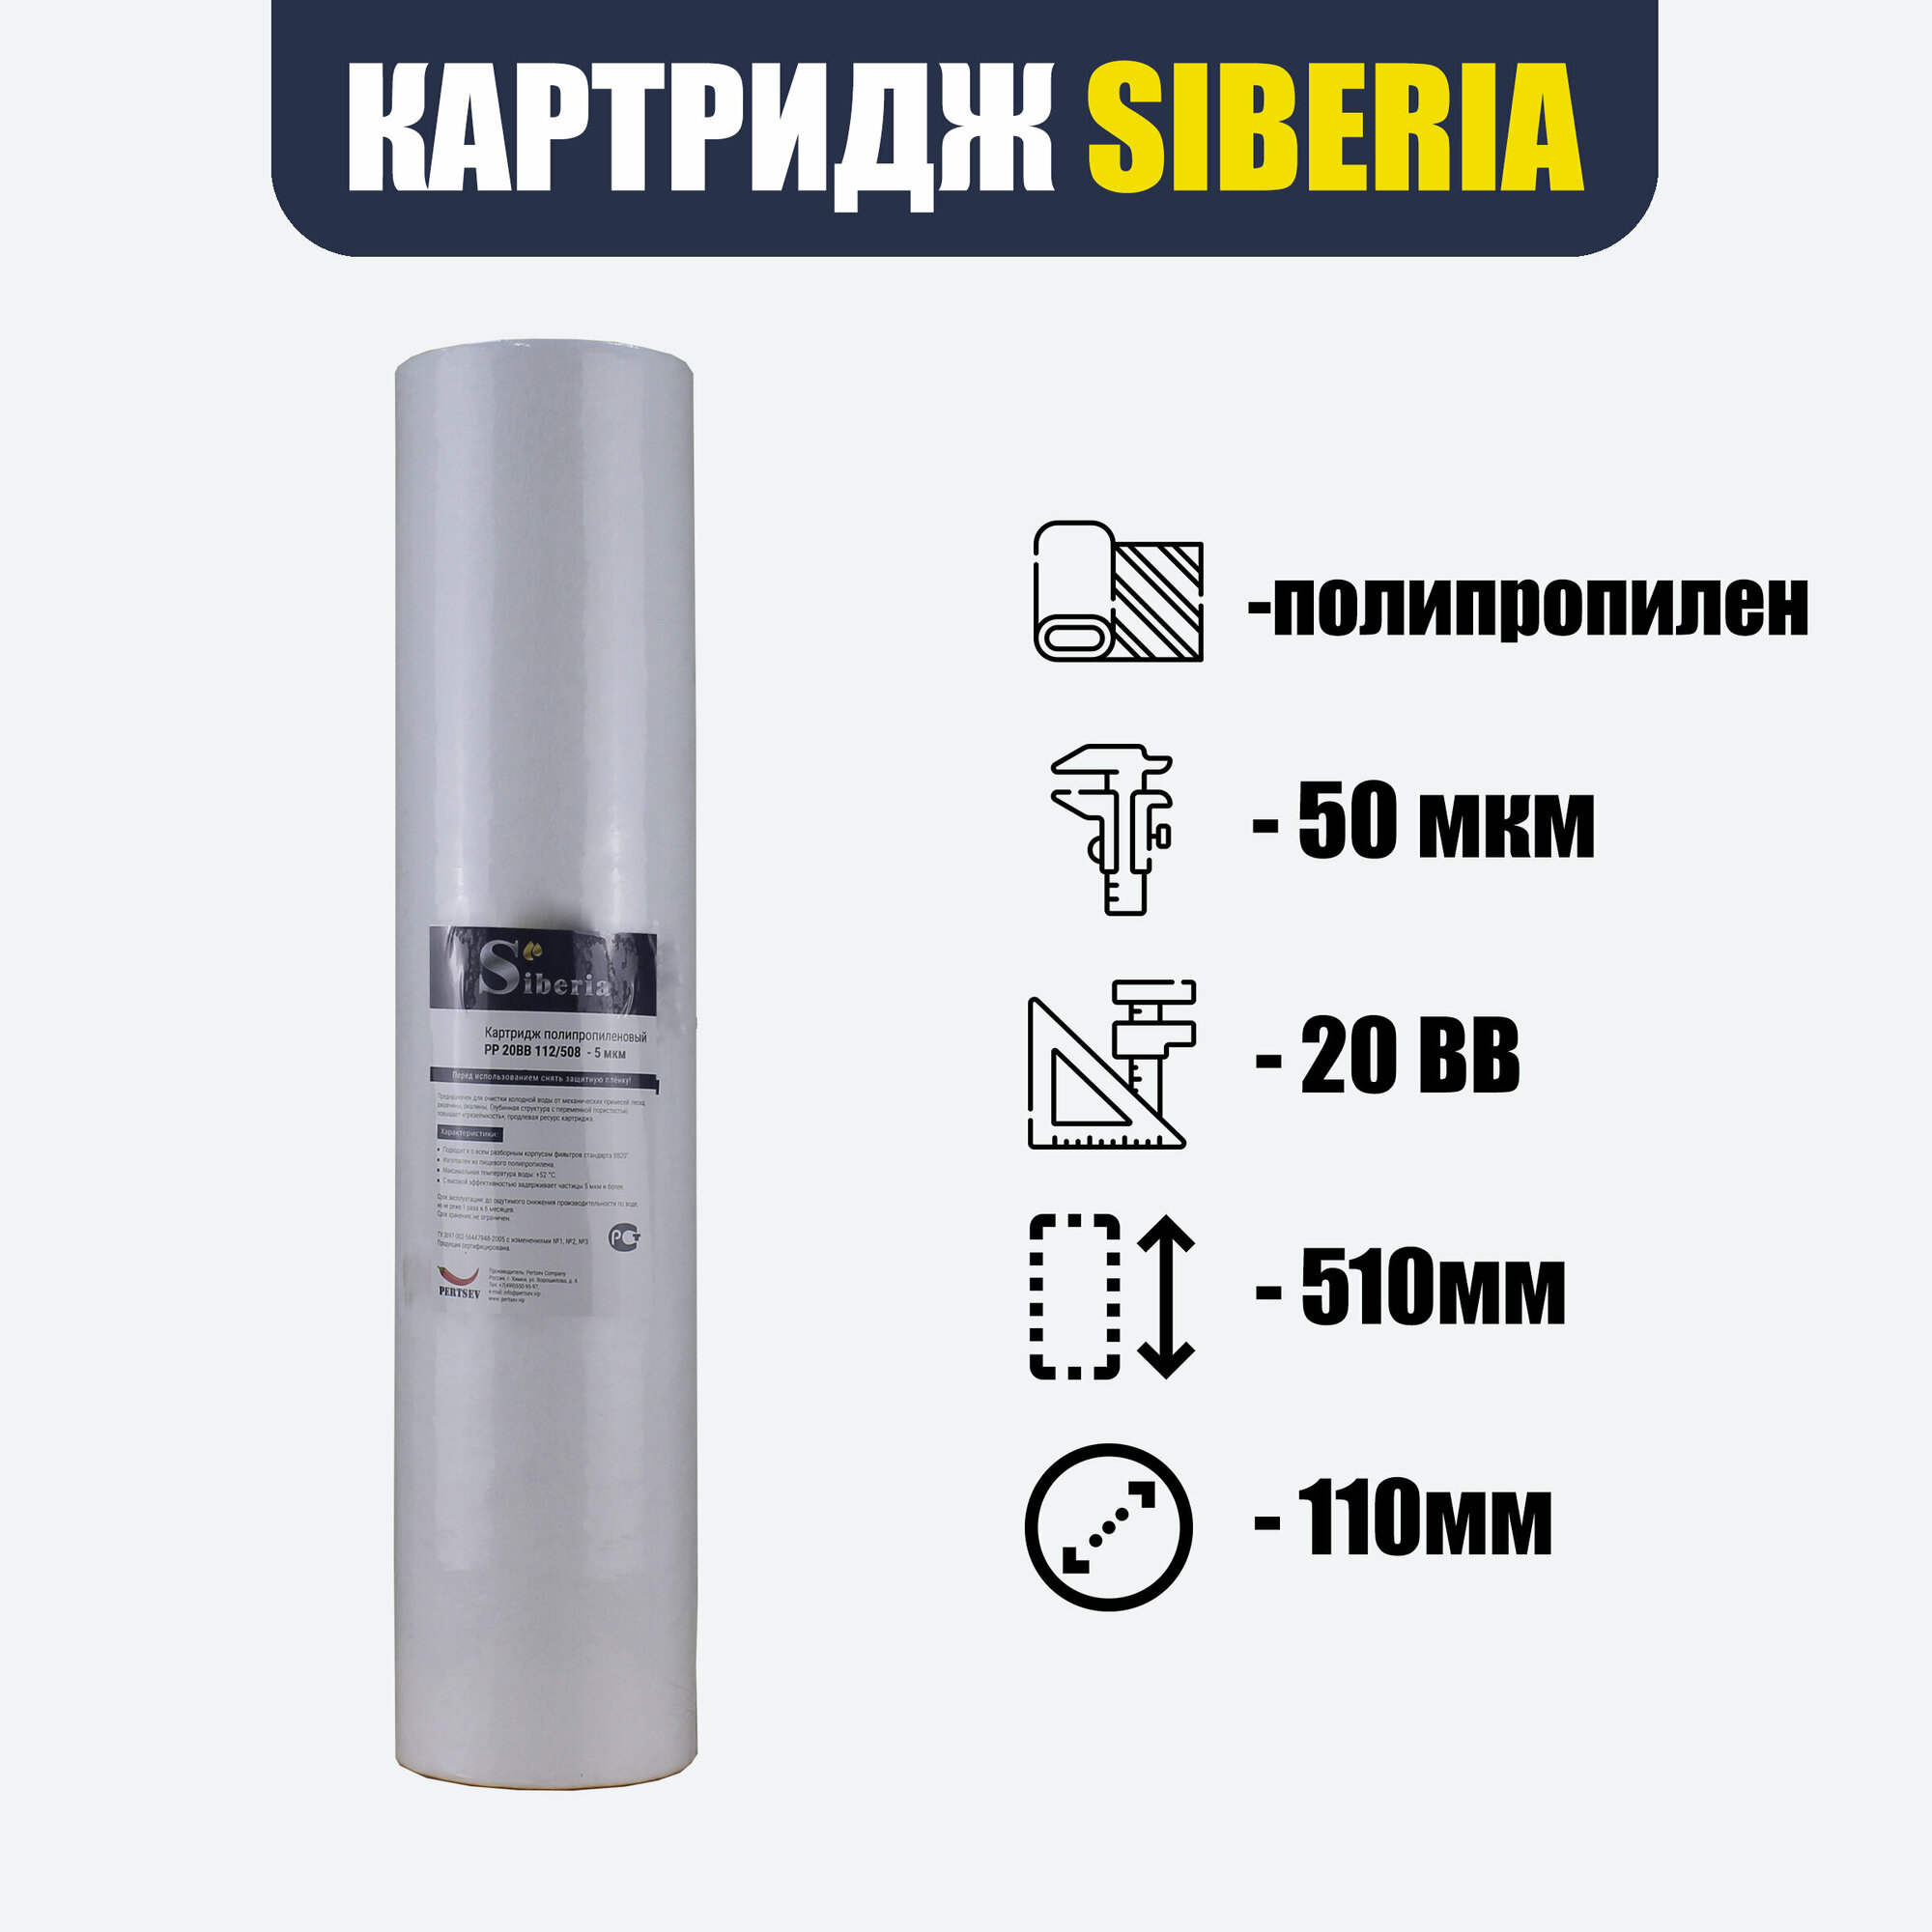 Полипропиленовый фильтр SIBERIA для корпуса 20BB, 50 мкм, 1шт